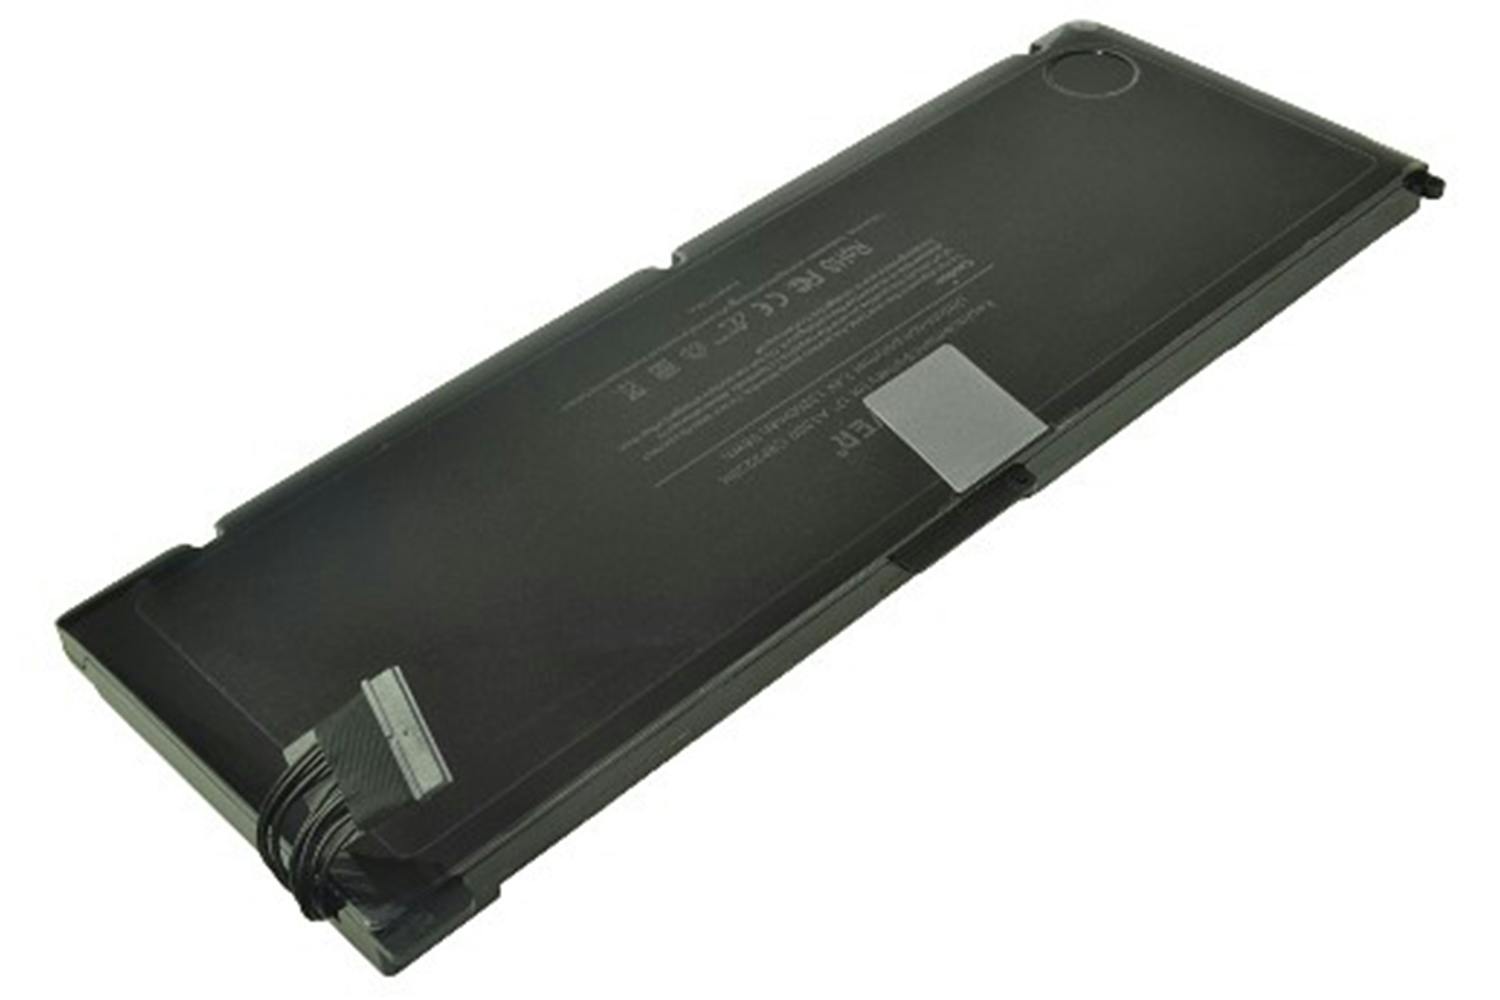 2-Power Main Battery Pack 7.4V 13200mAh